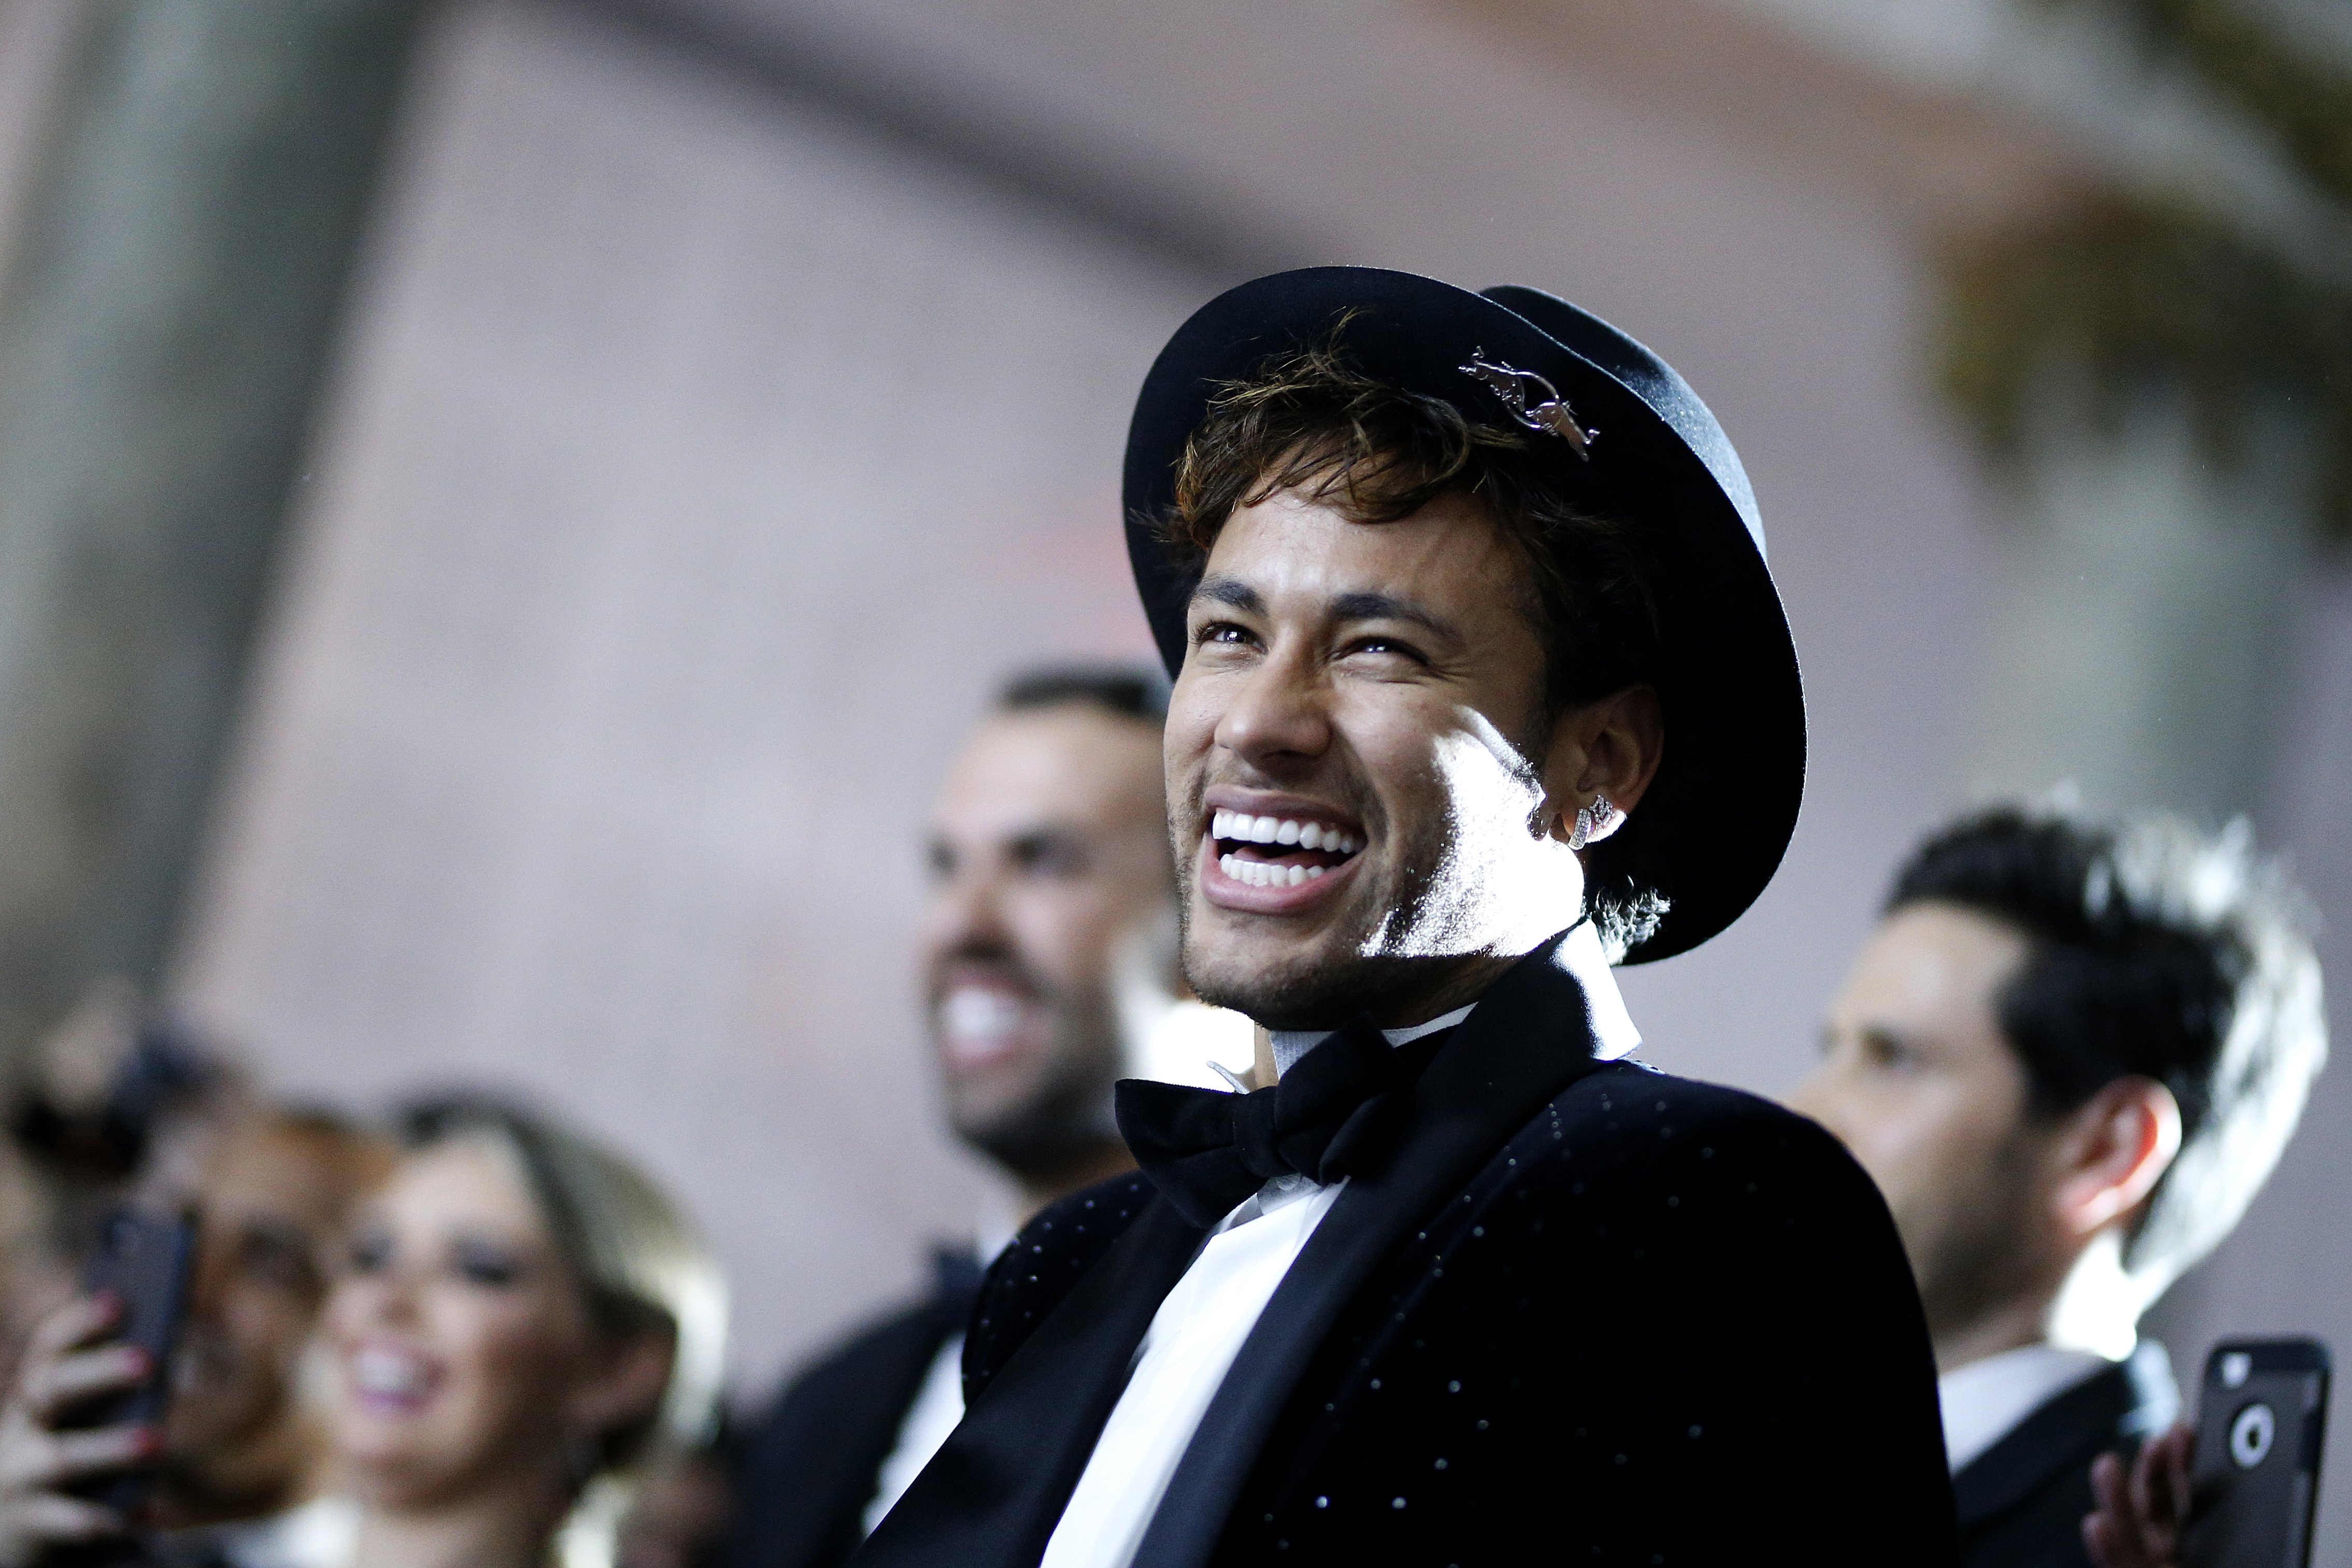 La gran festa d’aniversari de Neymar: pòquer, música i llàgrimes